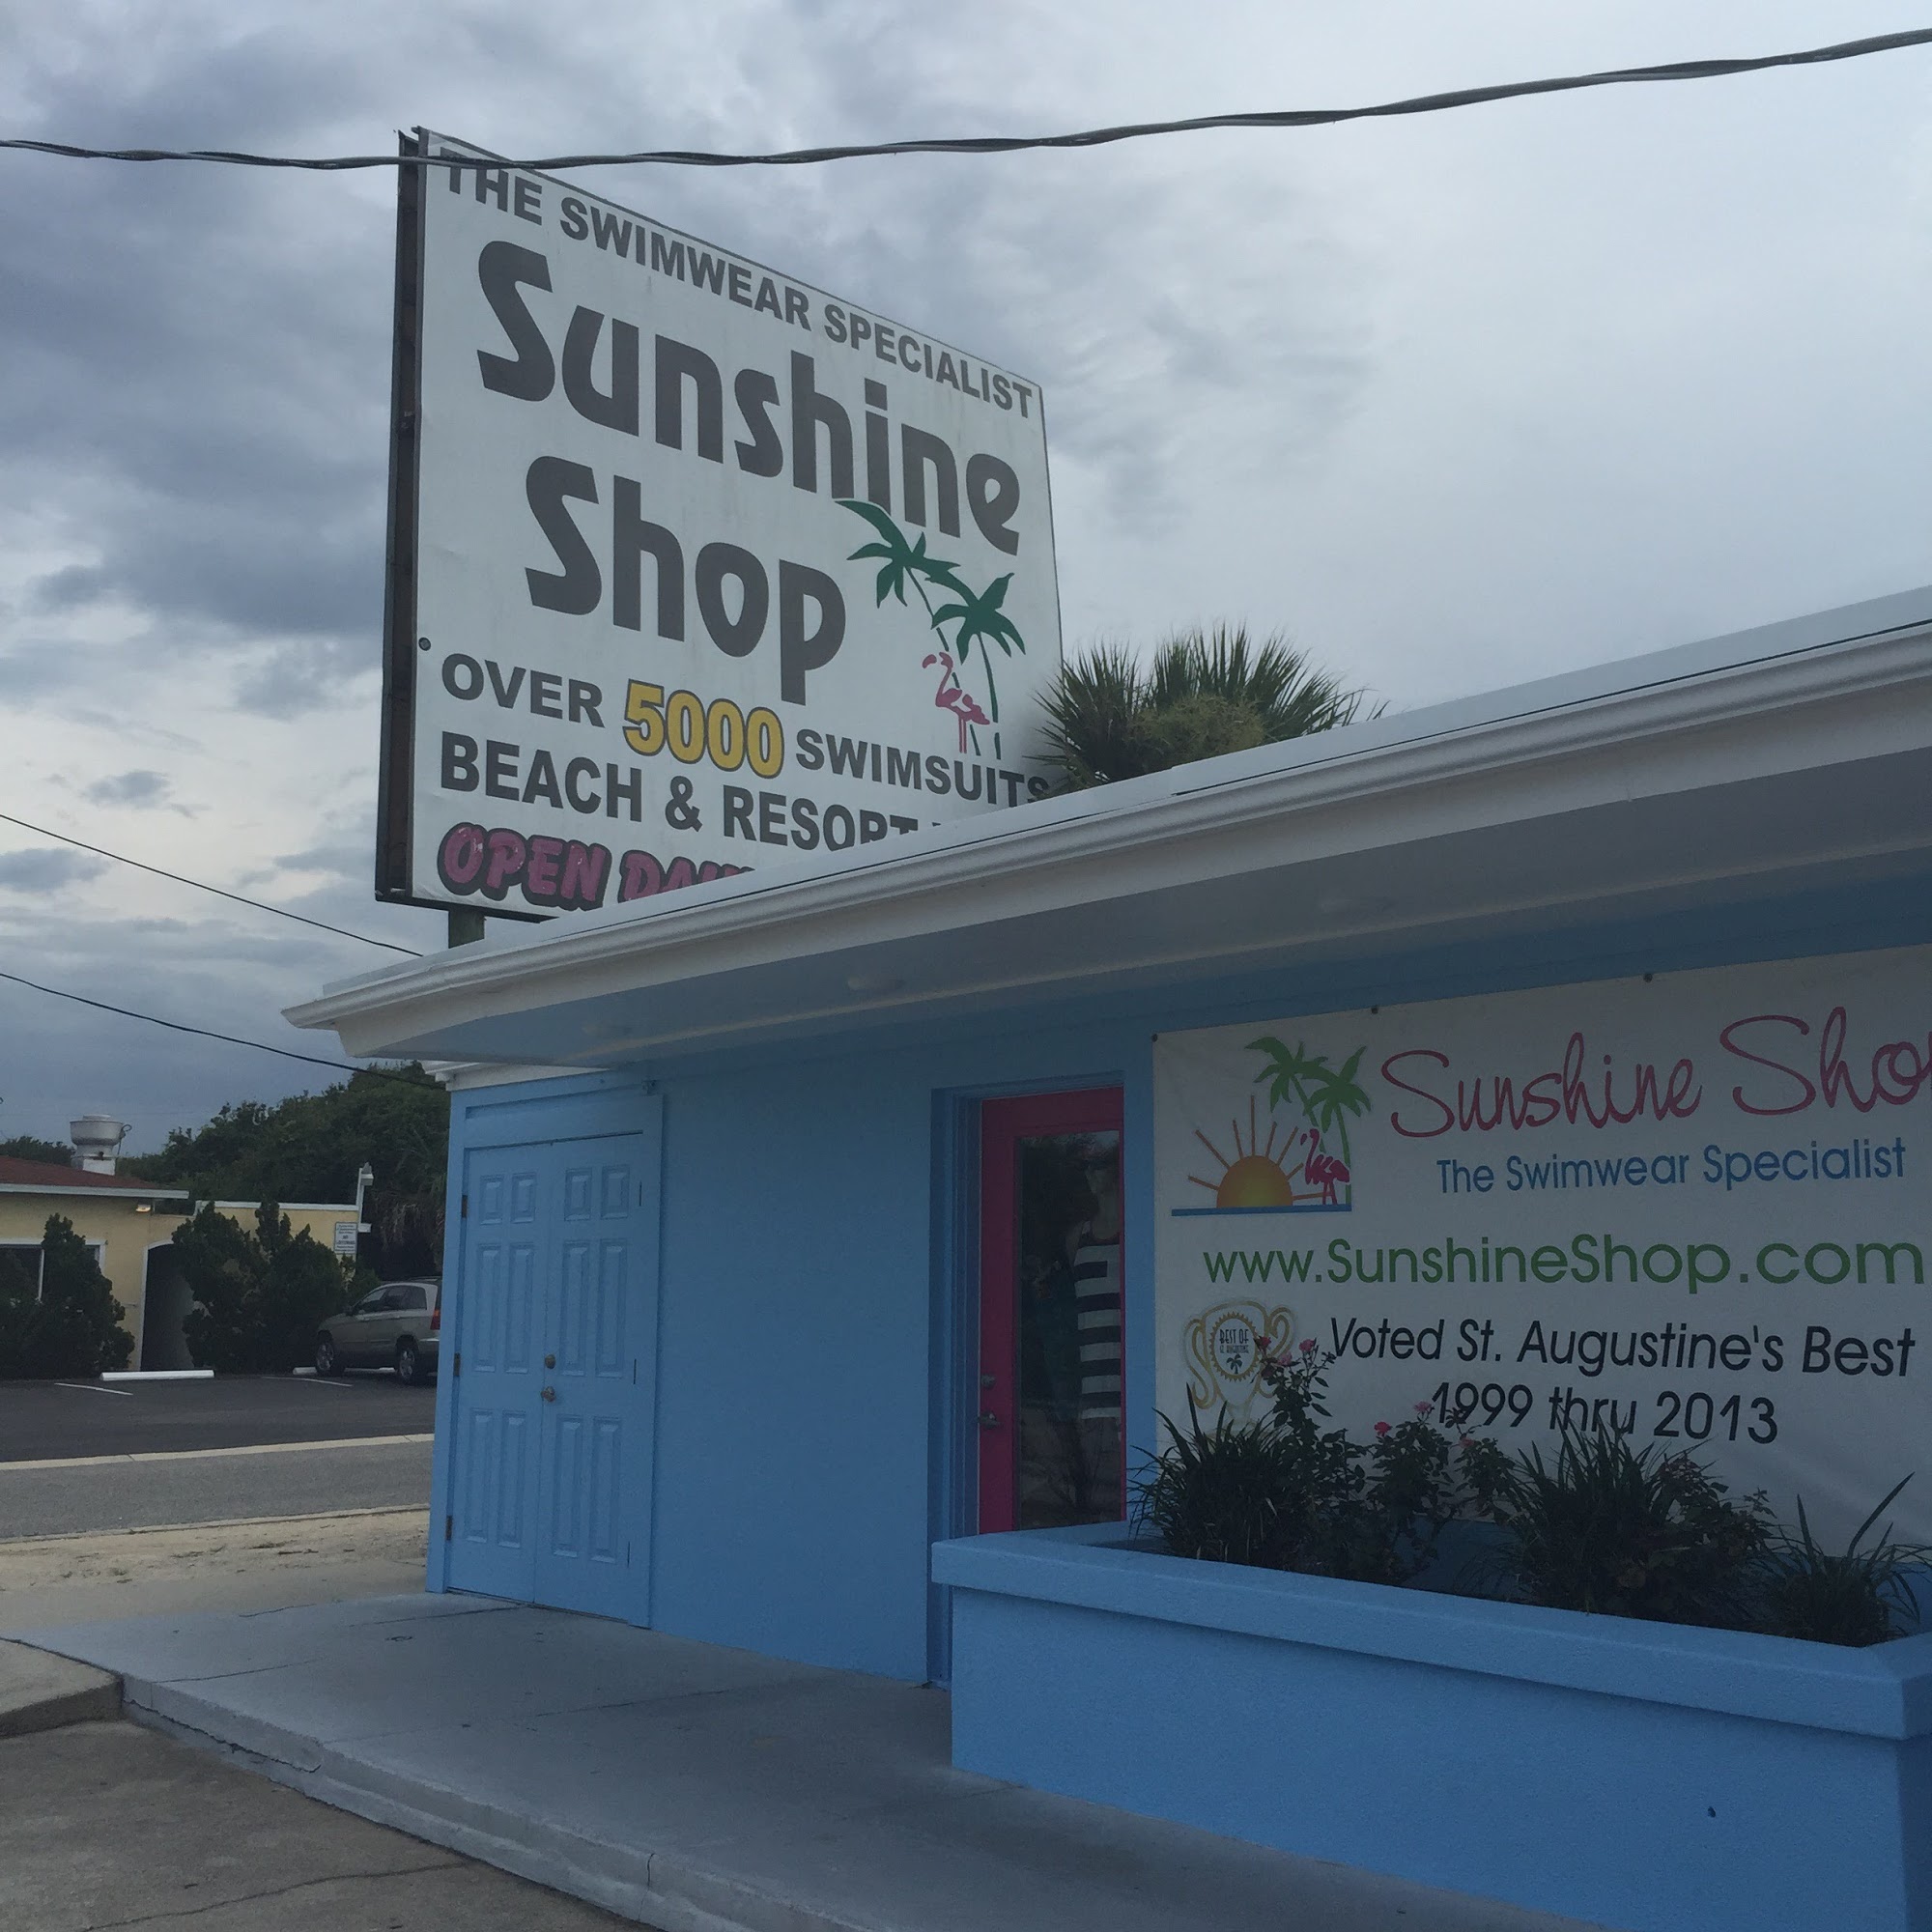 Sunshine Shop